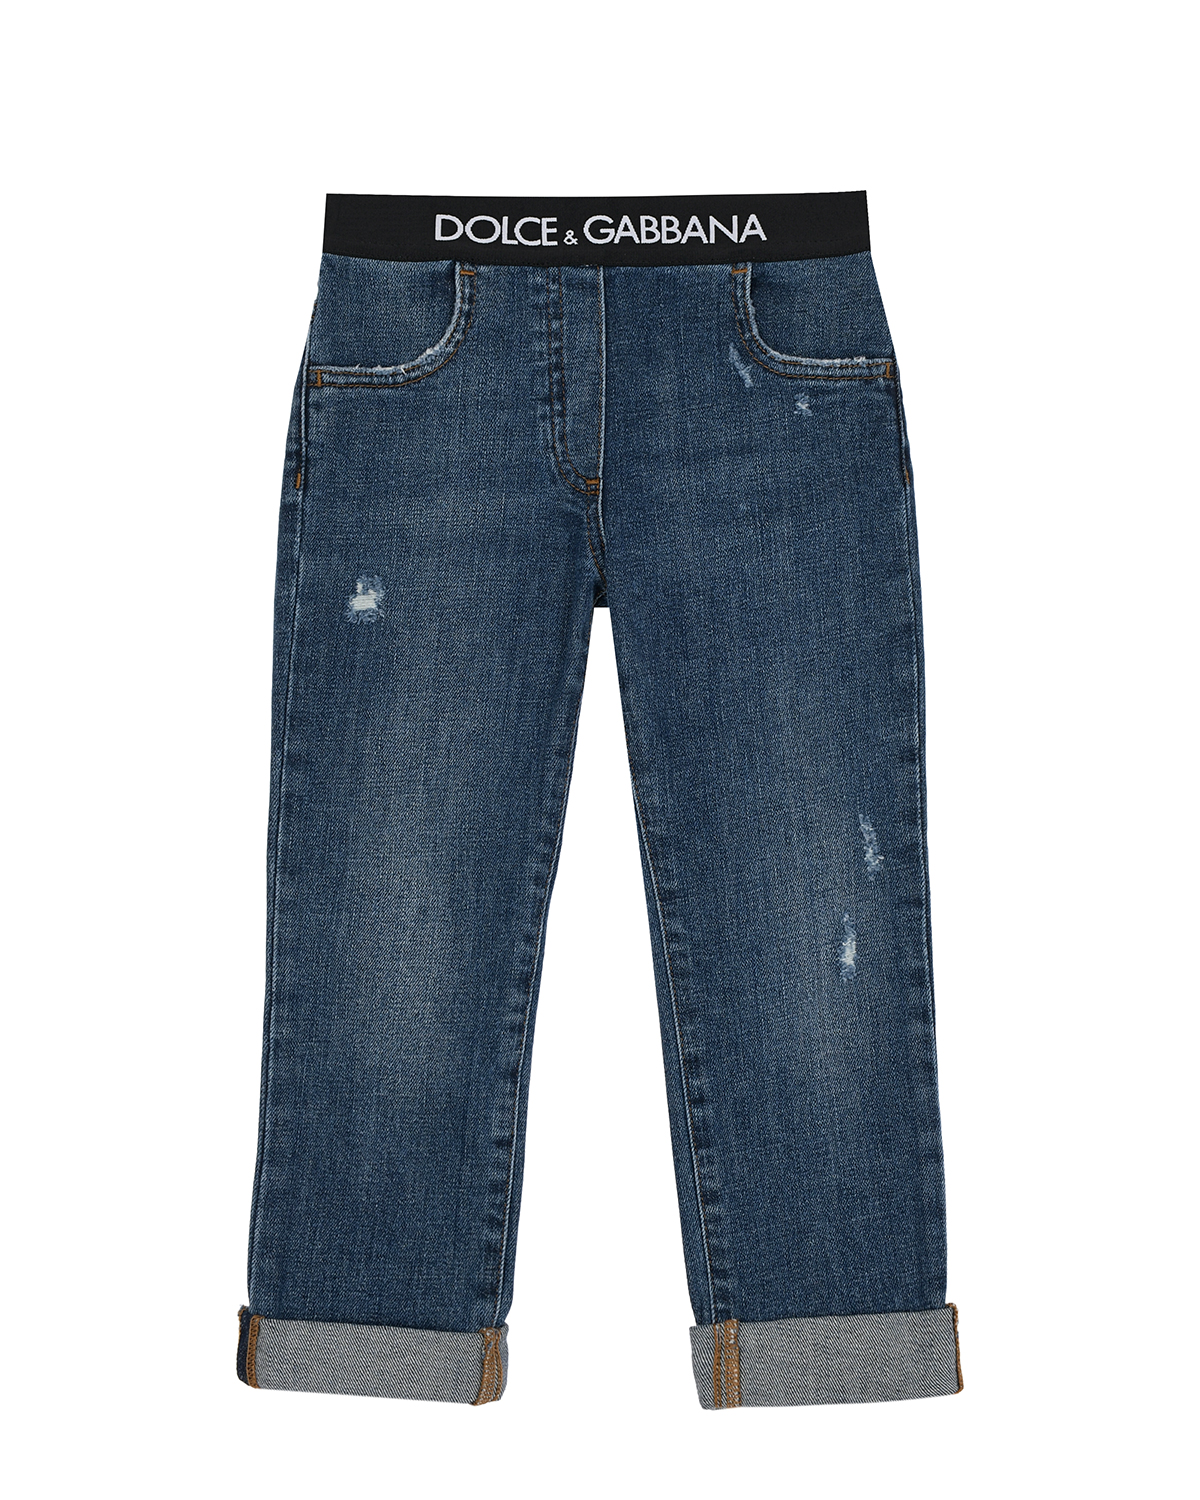 Синие джинсы с поясом на резинке Dolce&Gabbana детские